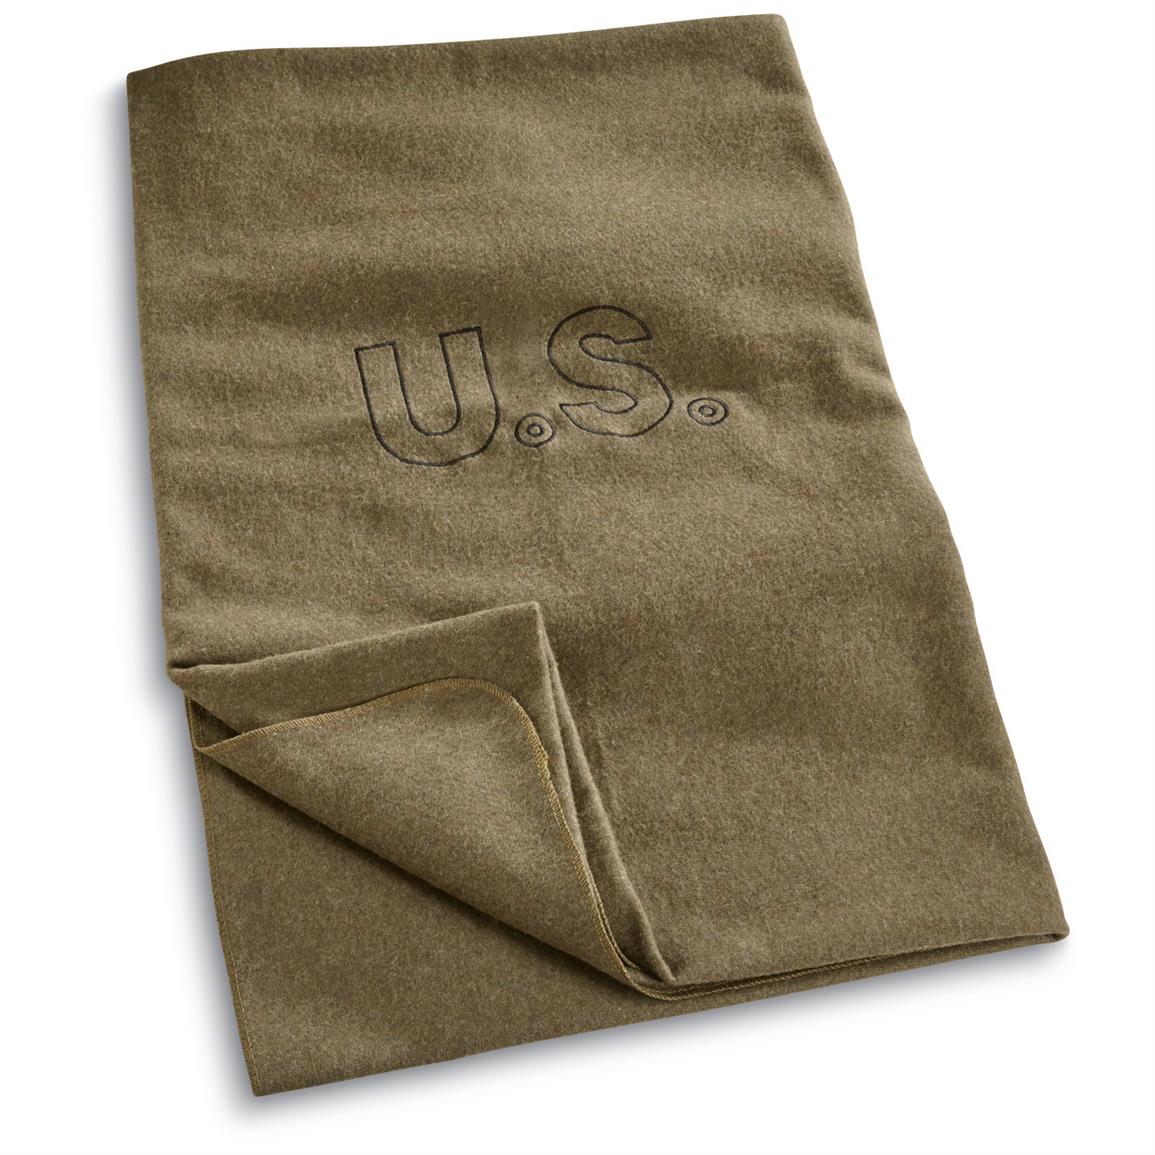 U.S. Military Surplus Embroidered Blanket